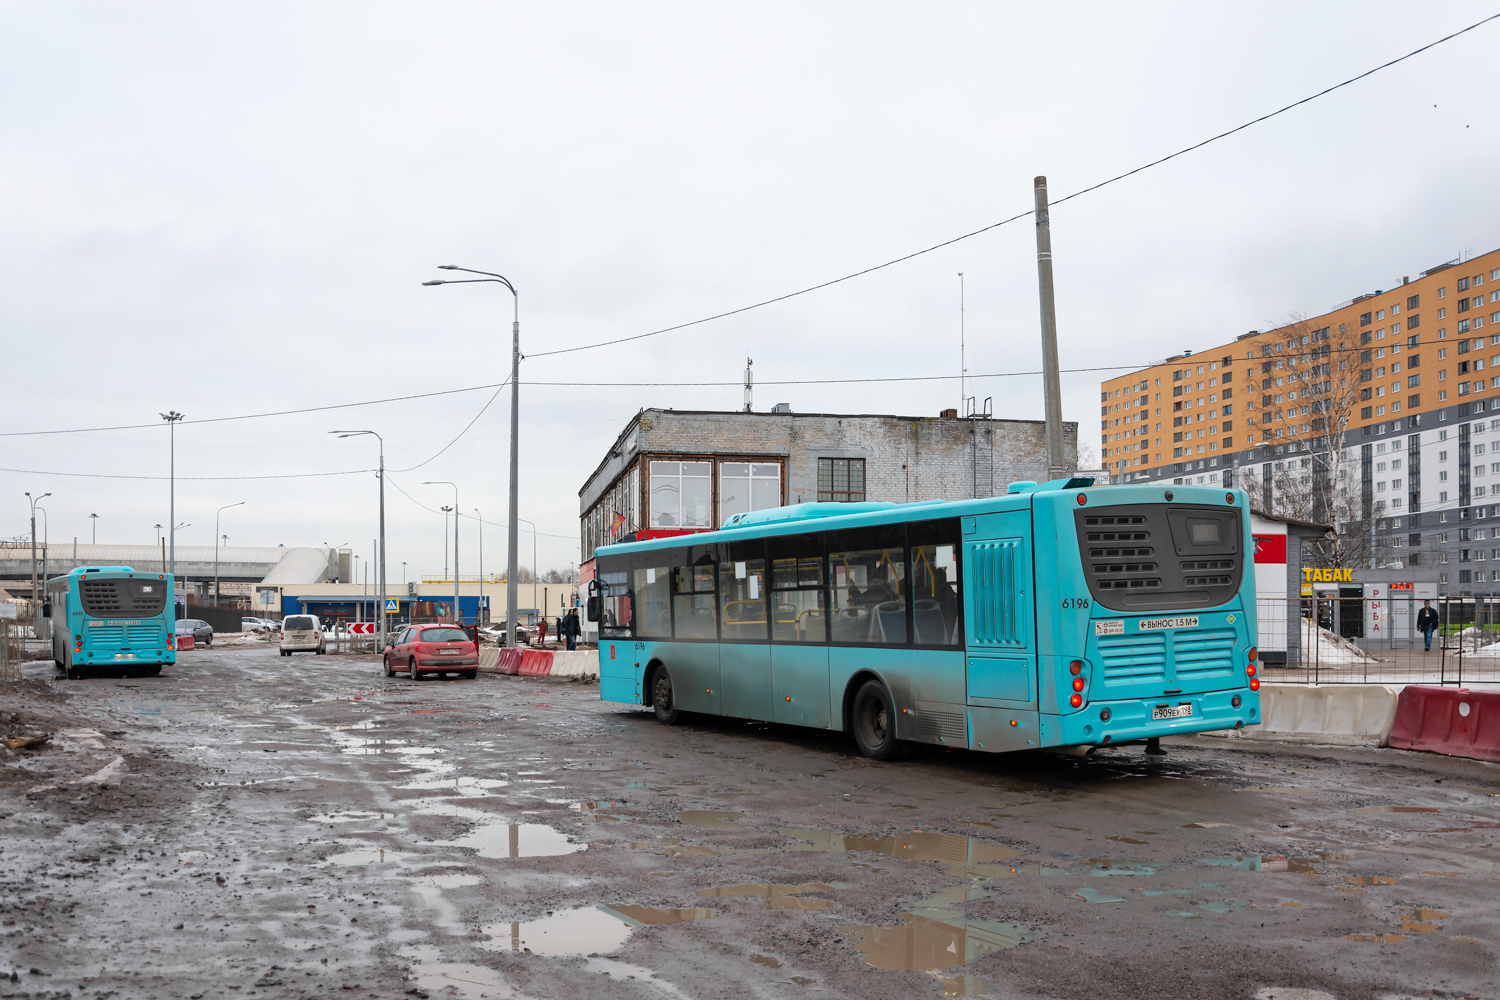 サンクトペテルブルク, Volgabus-5270.G2 (LNG) # 6196